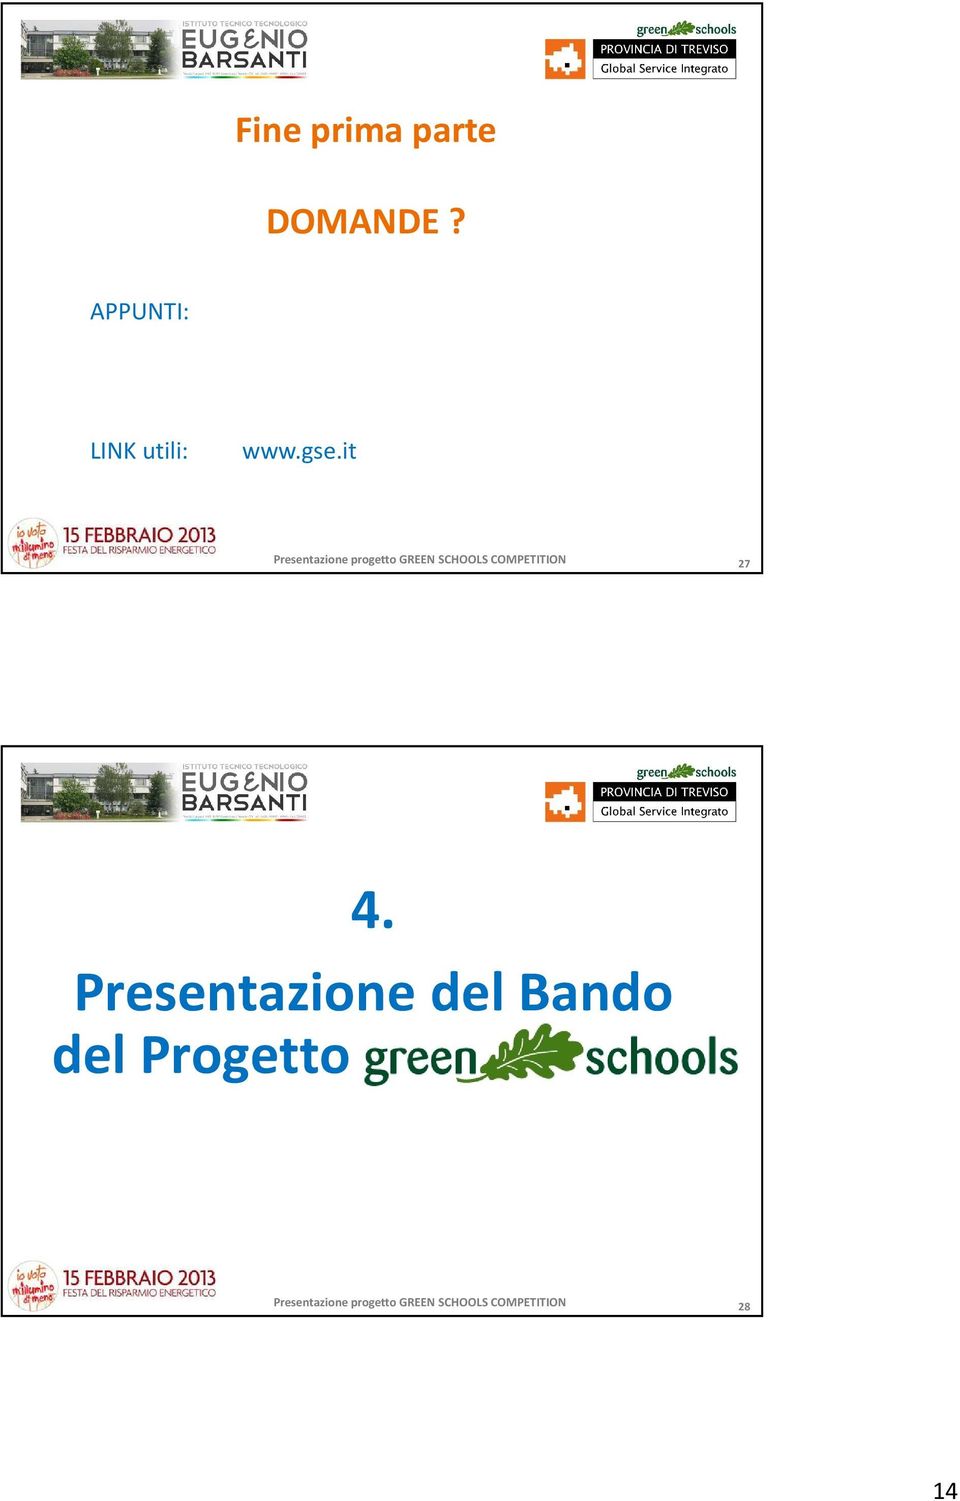 4. Presentazione del Bando del Progetto green schools